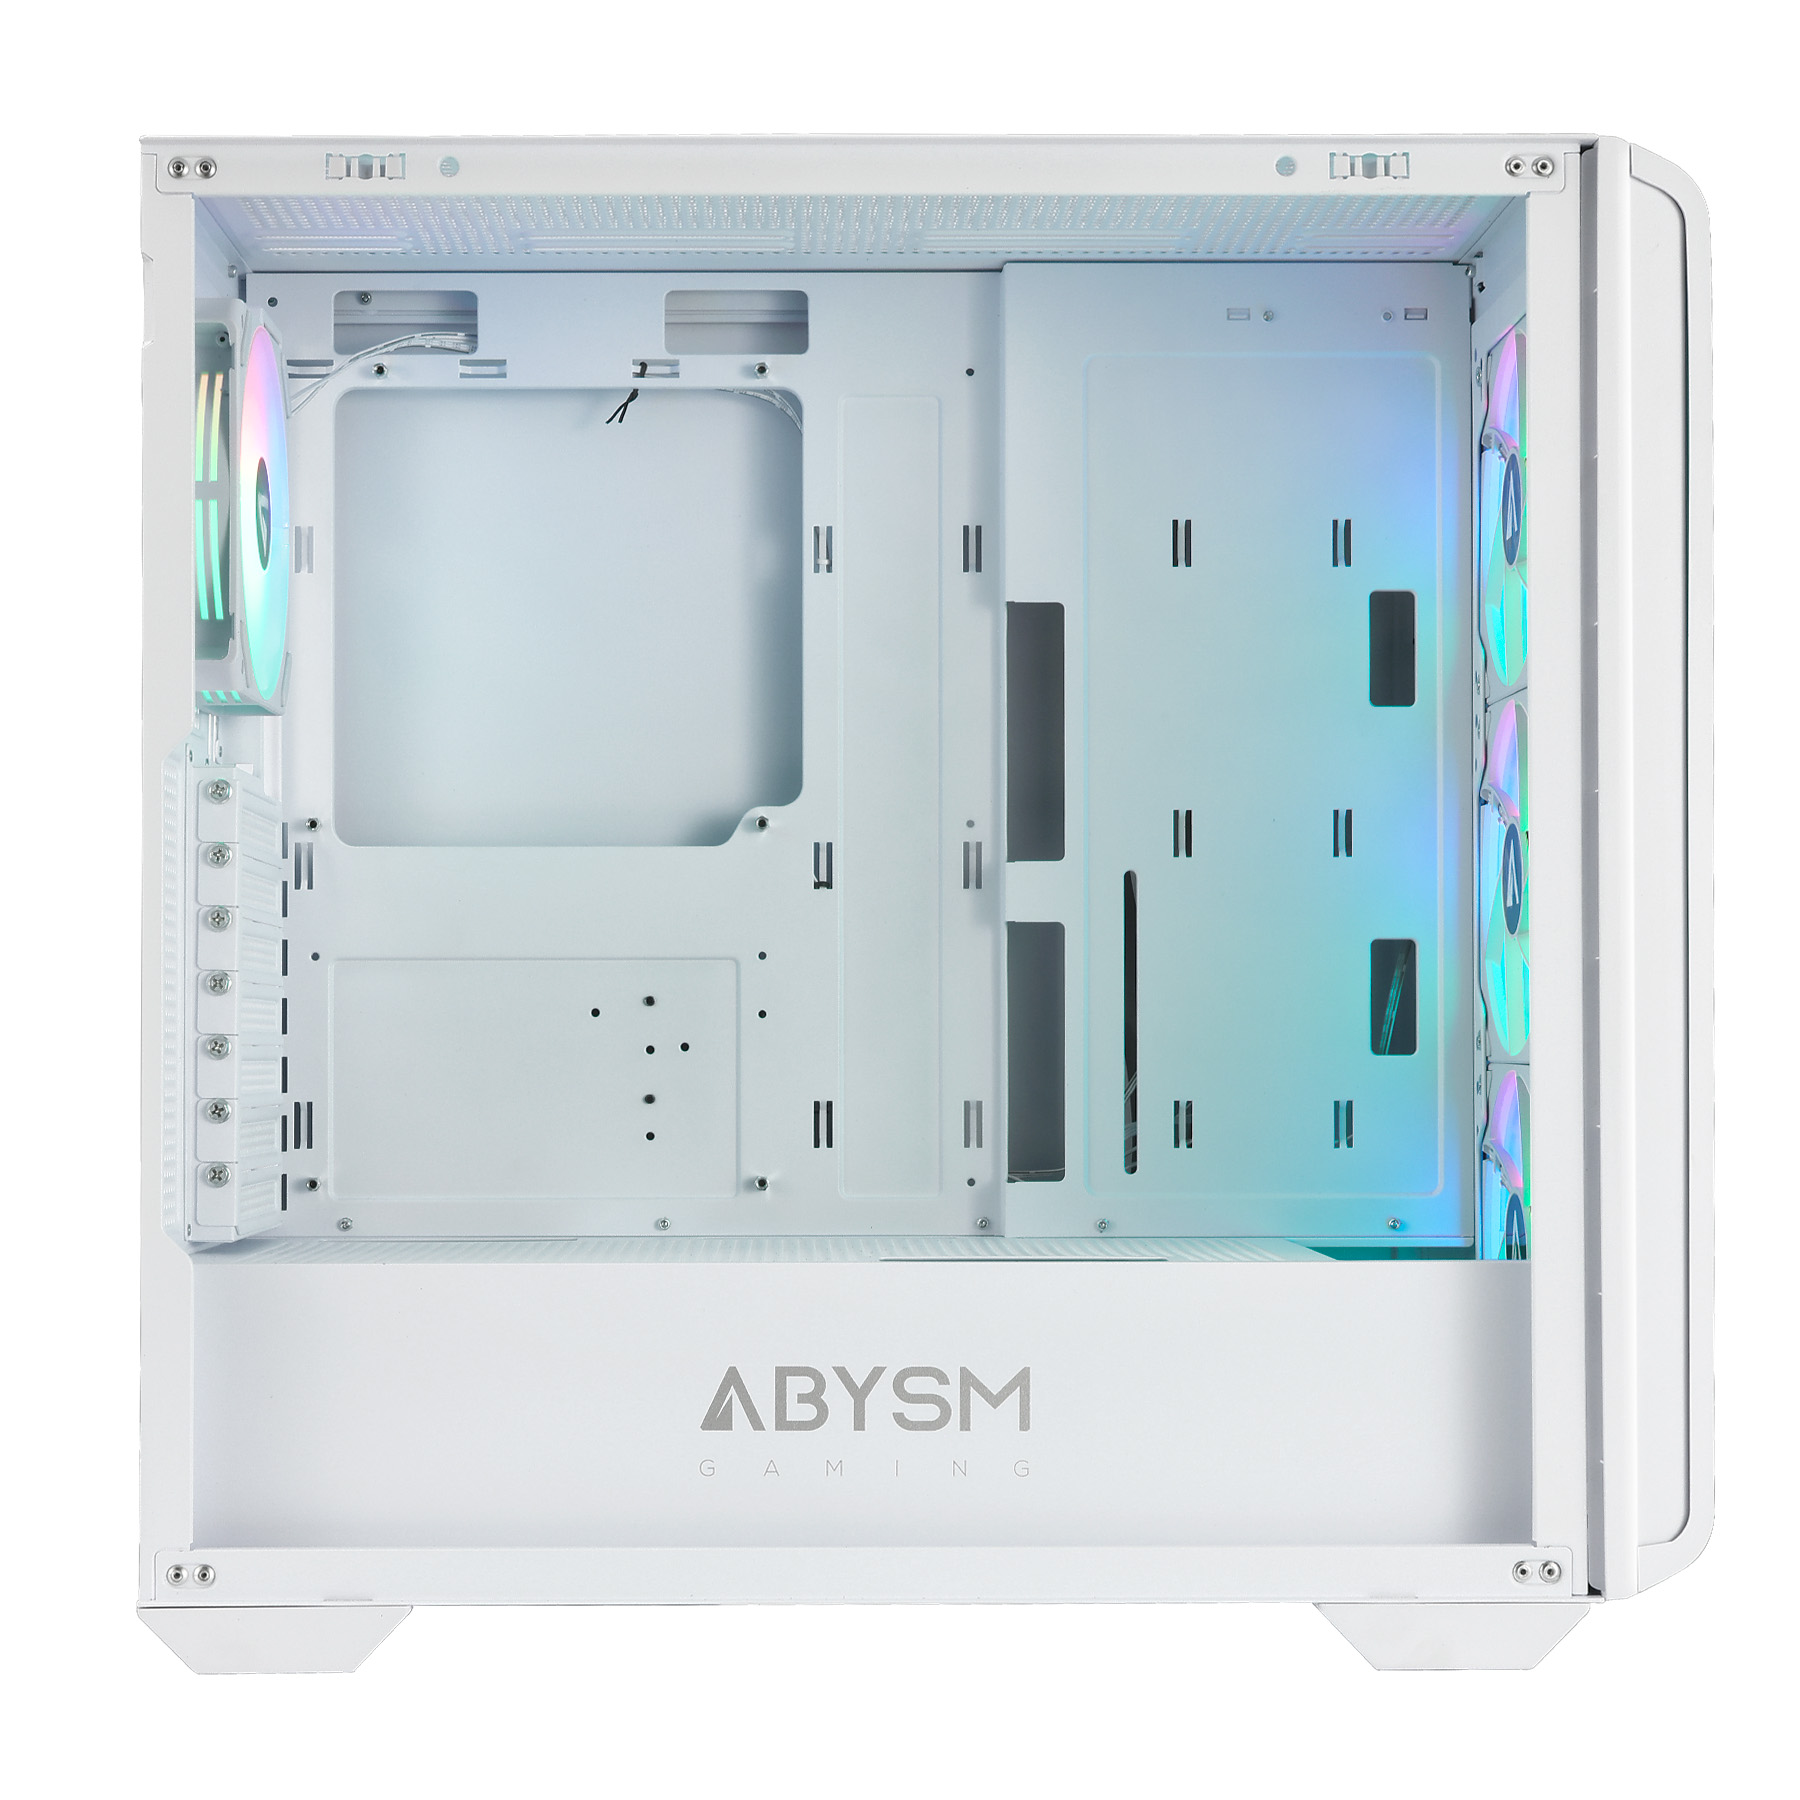 La revolucionaria Caja ATX KAMP BX 300 redefine la experiencia de construcción de PC con sus innovadoras características. Esta caja ofrece un diseño elegante y moderno que combina sobriedad con un toque de color gracias a los cuatro ventiladores ARGB que, al girar, añaden un dinamismo único.